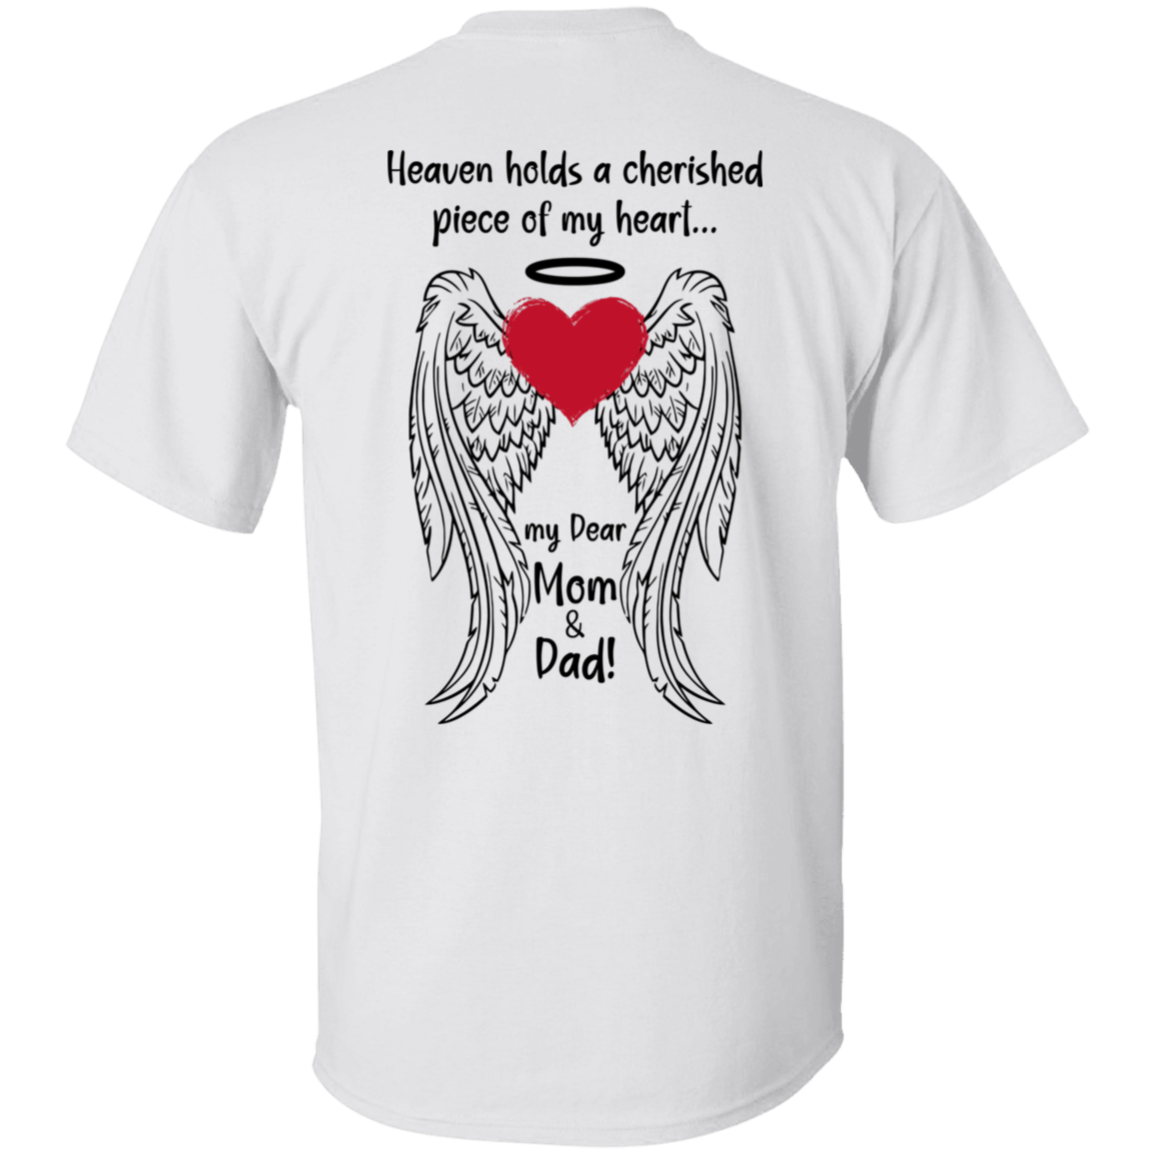 𝗠𝗢𝗠 & 𝗗𝗔𝗗, HEAVENLY GUARDIANS - Unisex T-Shirt